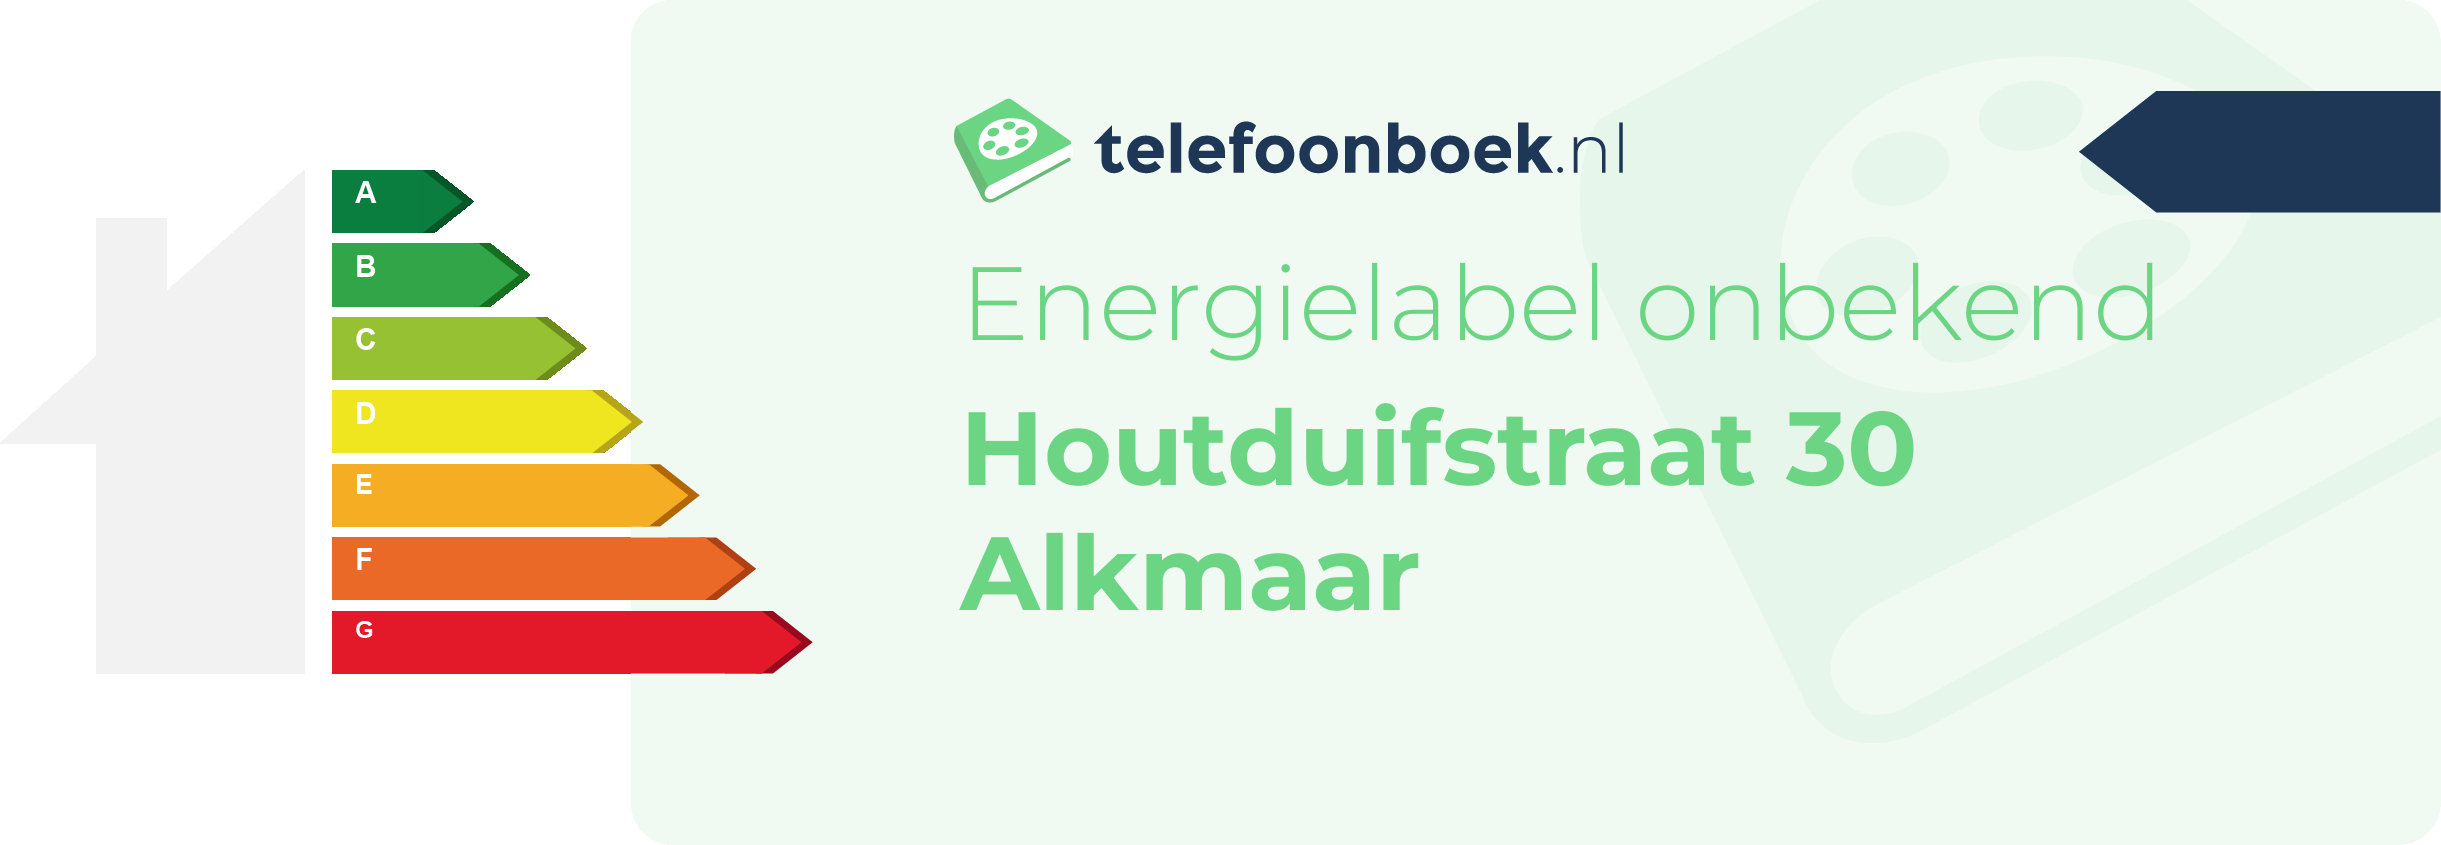 Energielabel Houtduifstraat 30 Alkmaar